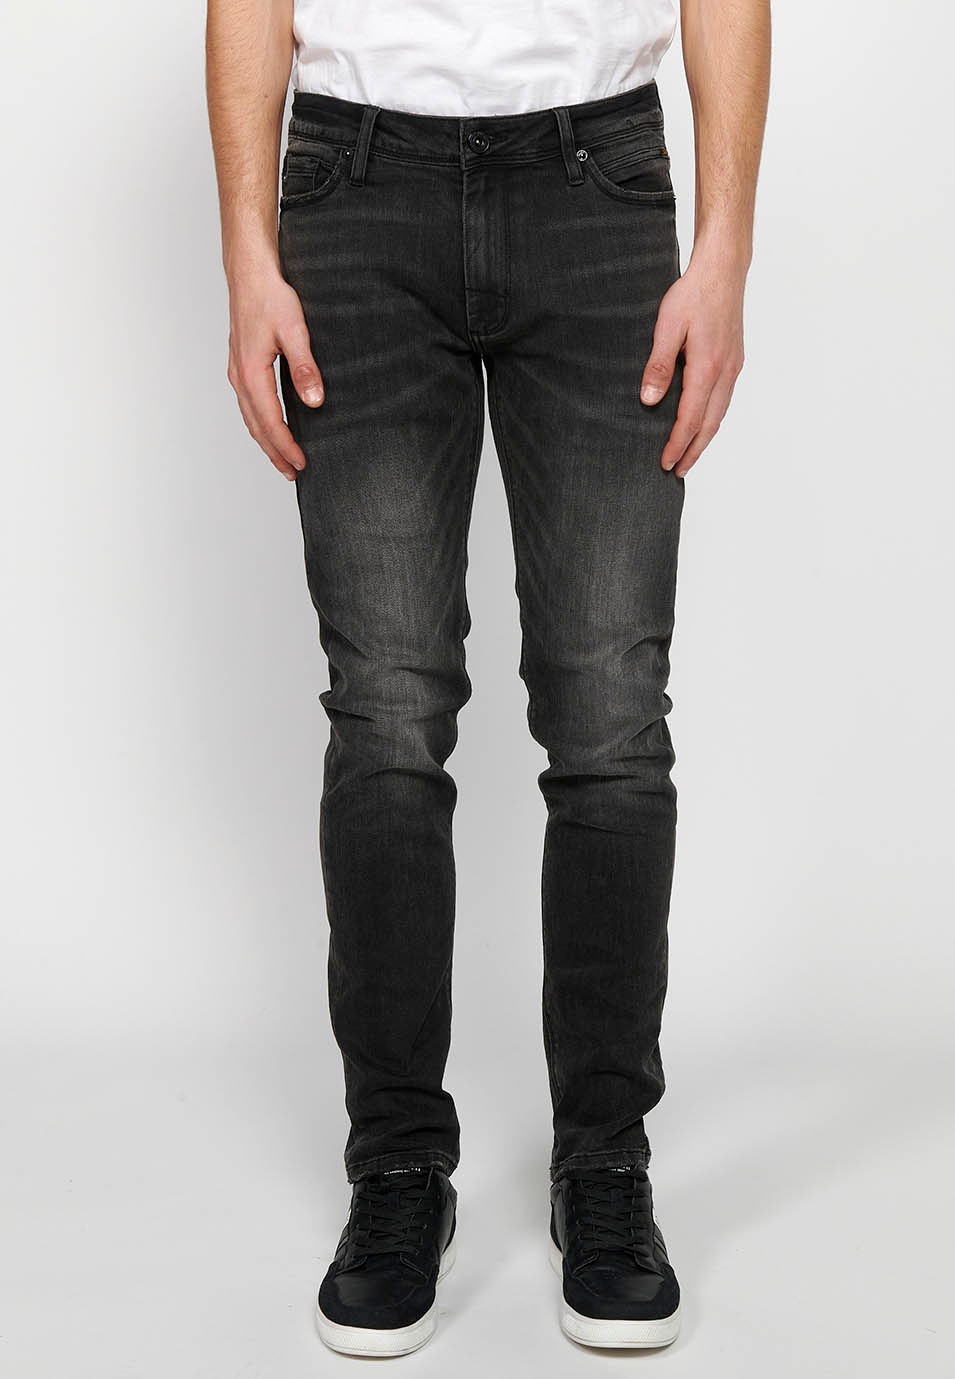 Pantalons texans llarg straigth regular fit amb Tancament davanter amb cremallera i botó de Color Denim Negre per a Home 4